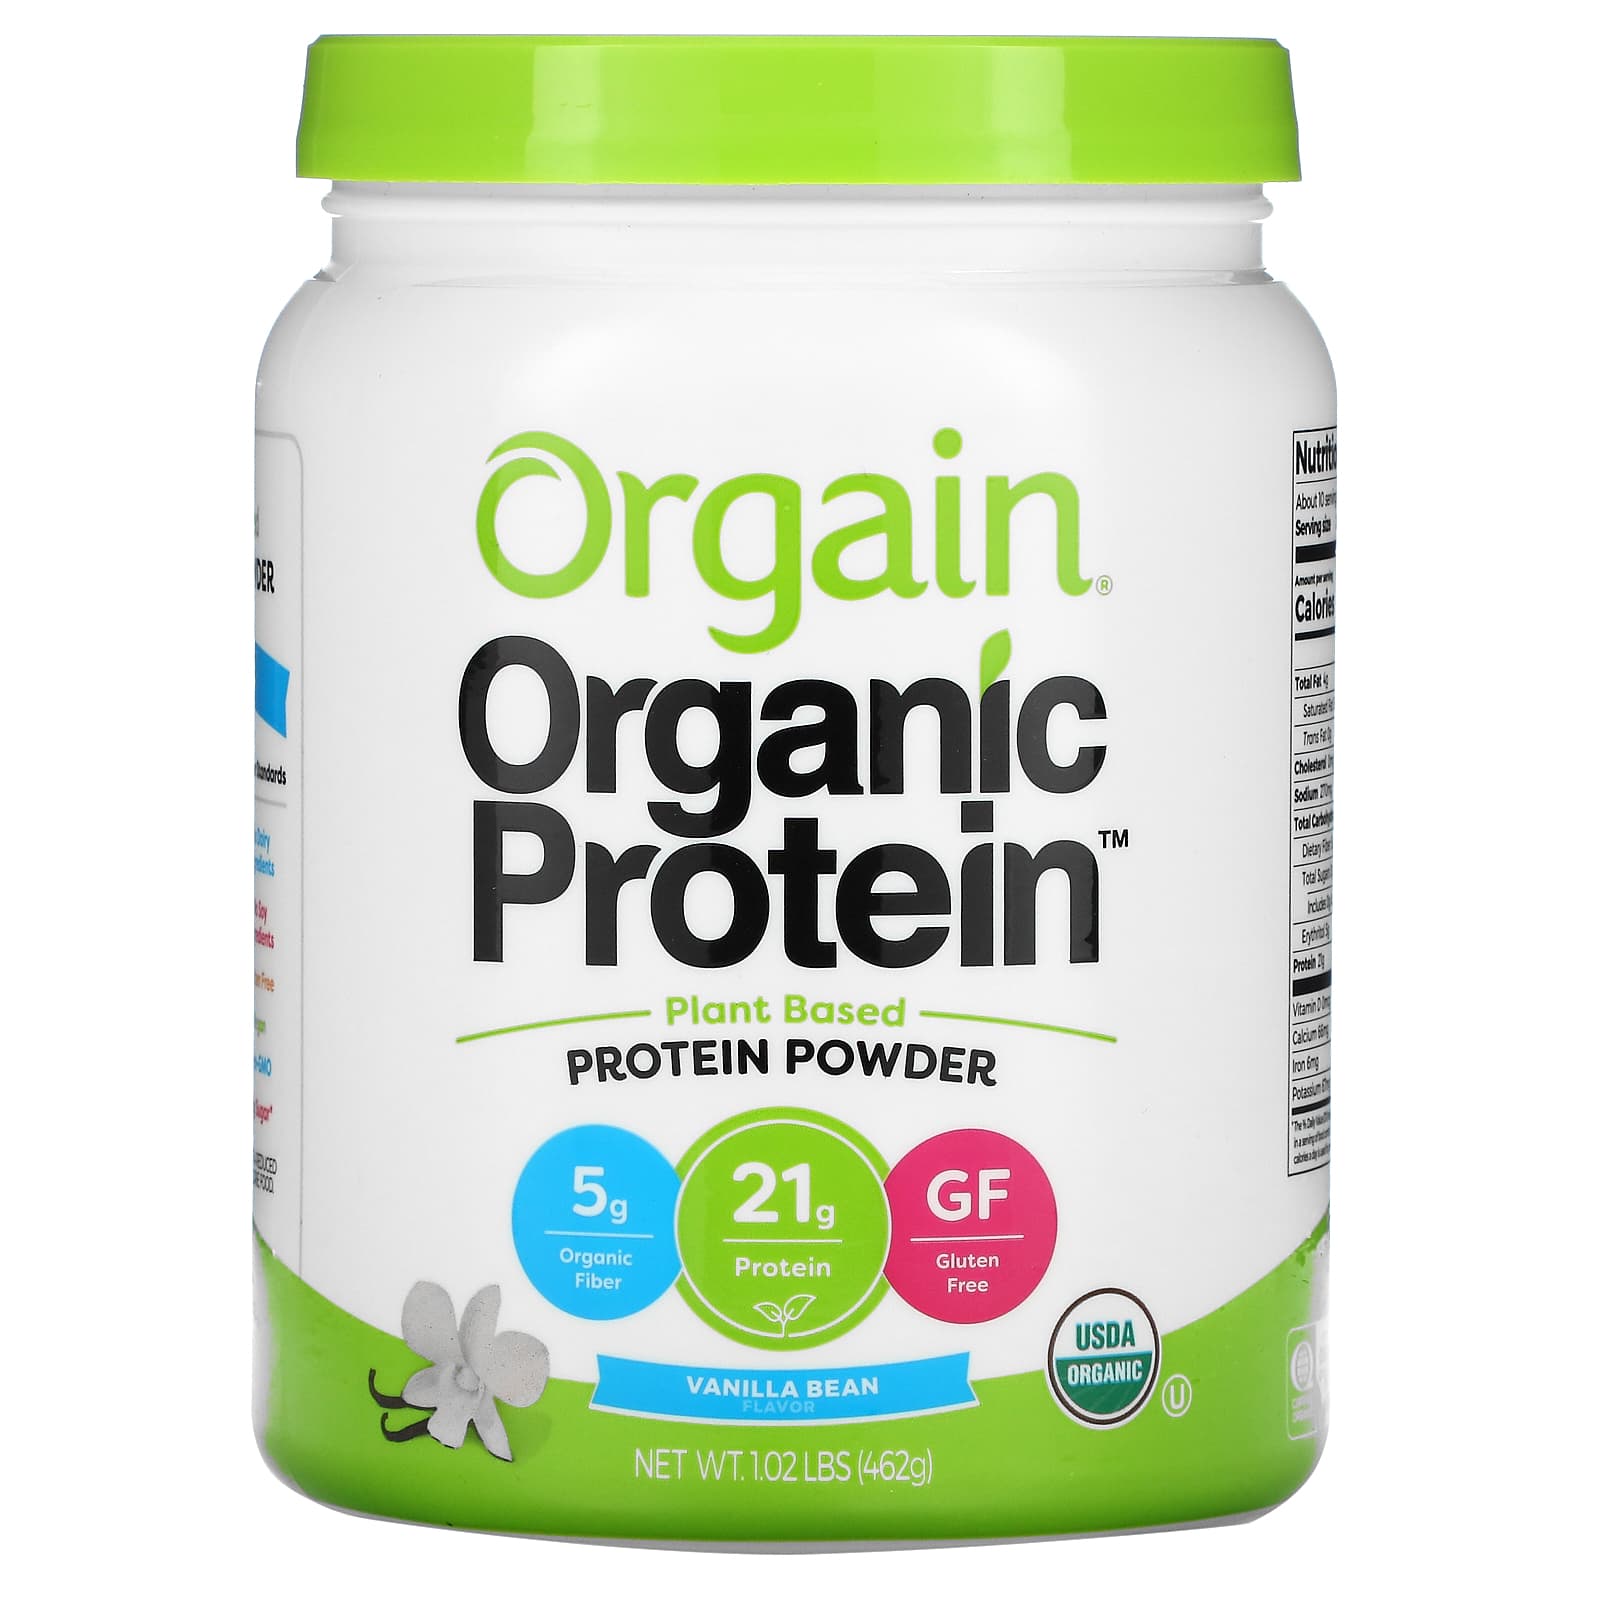 つようにな 2セット オーガニック プロテイン Organic Protein オルゲインの通販 by cokoman's shop｜ラクマ